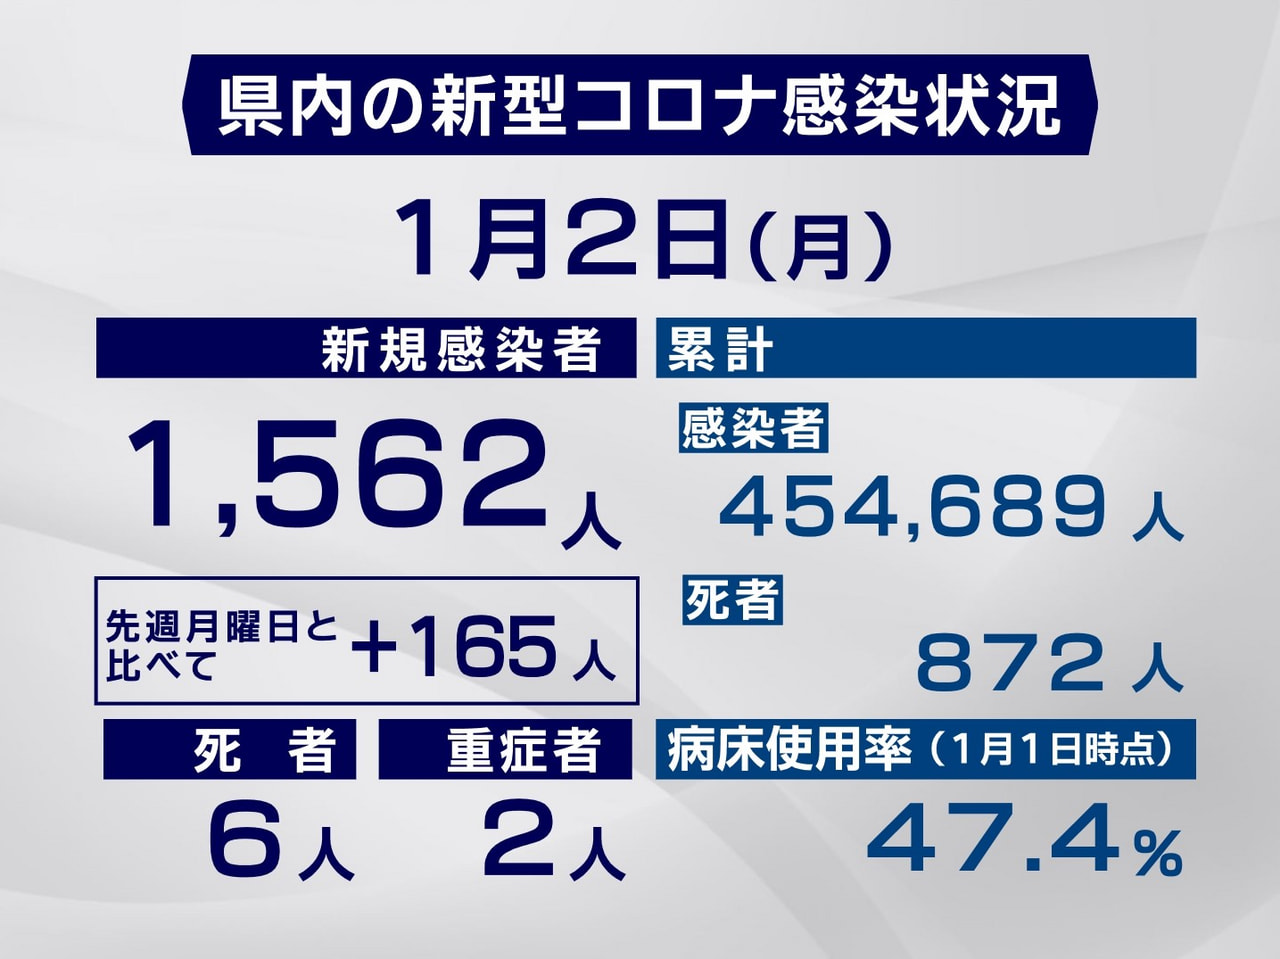 岐阜県と岐阜市は２日、新型コロナウイルスの感染者が新たに１５６２人、また１日と２...